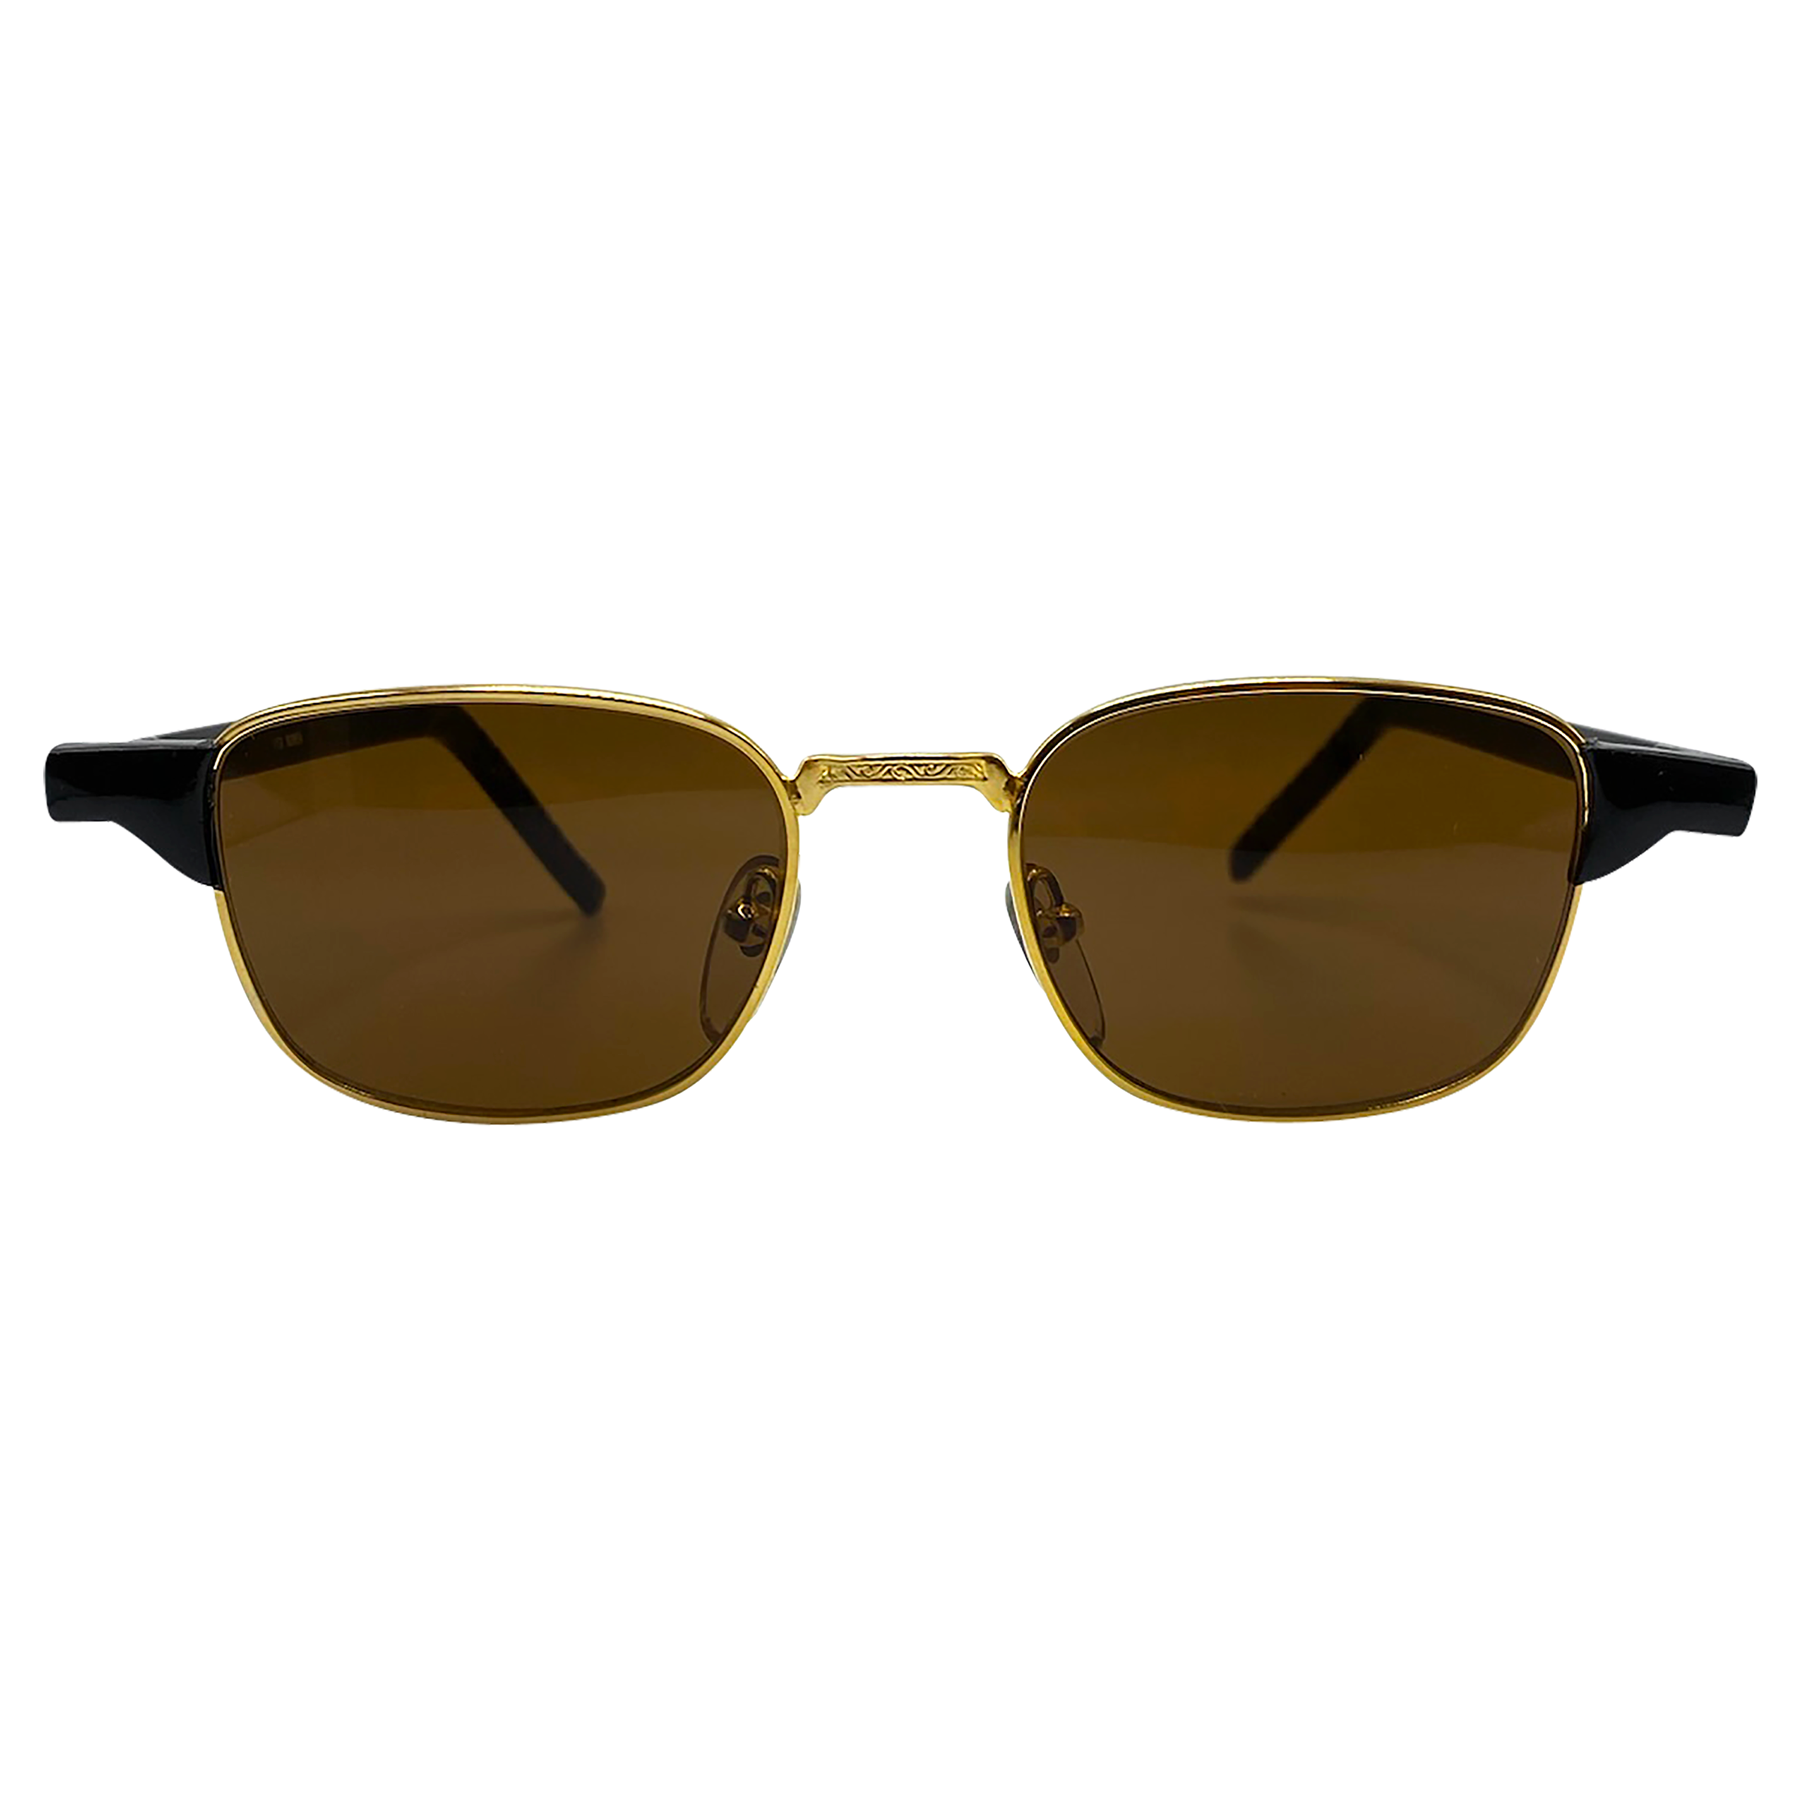 AILERON Black Gold/Brown Square Sunglasses